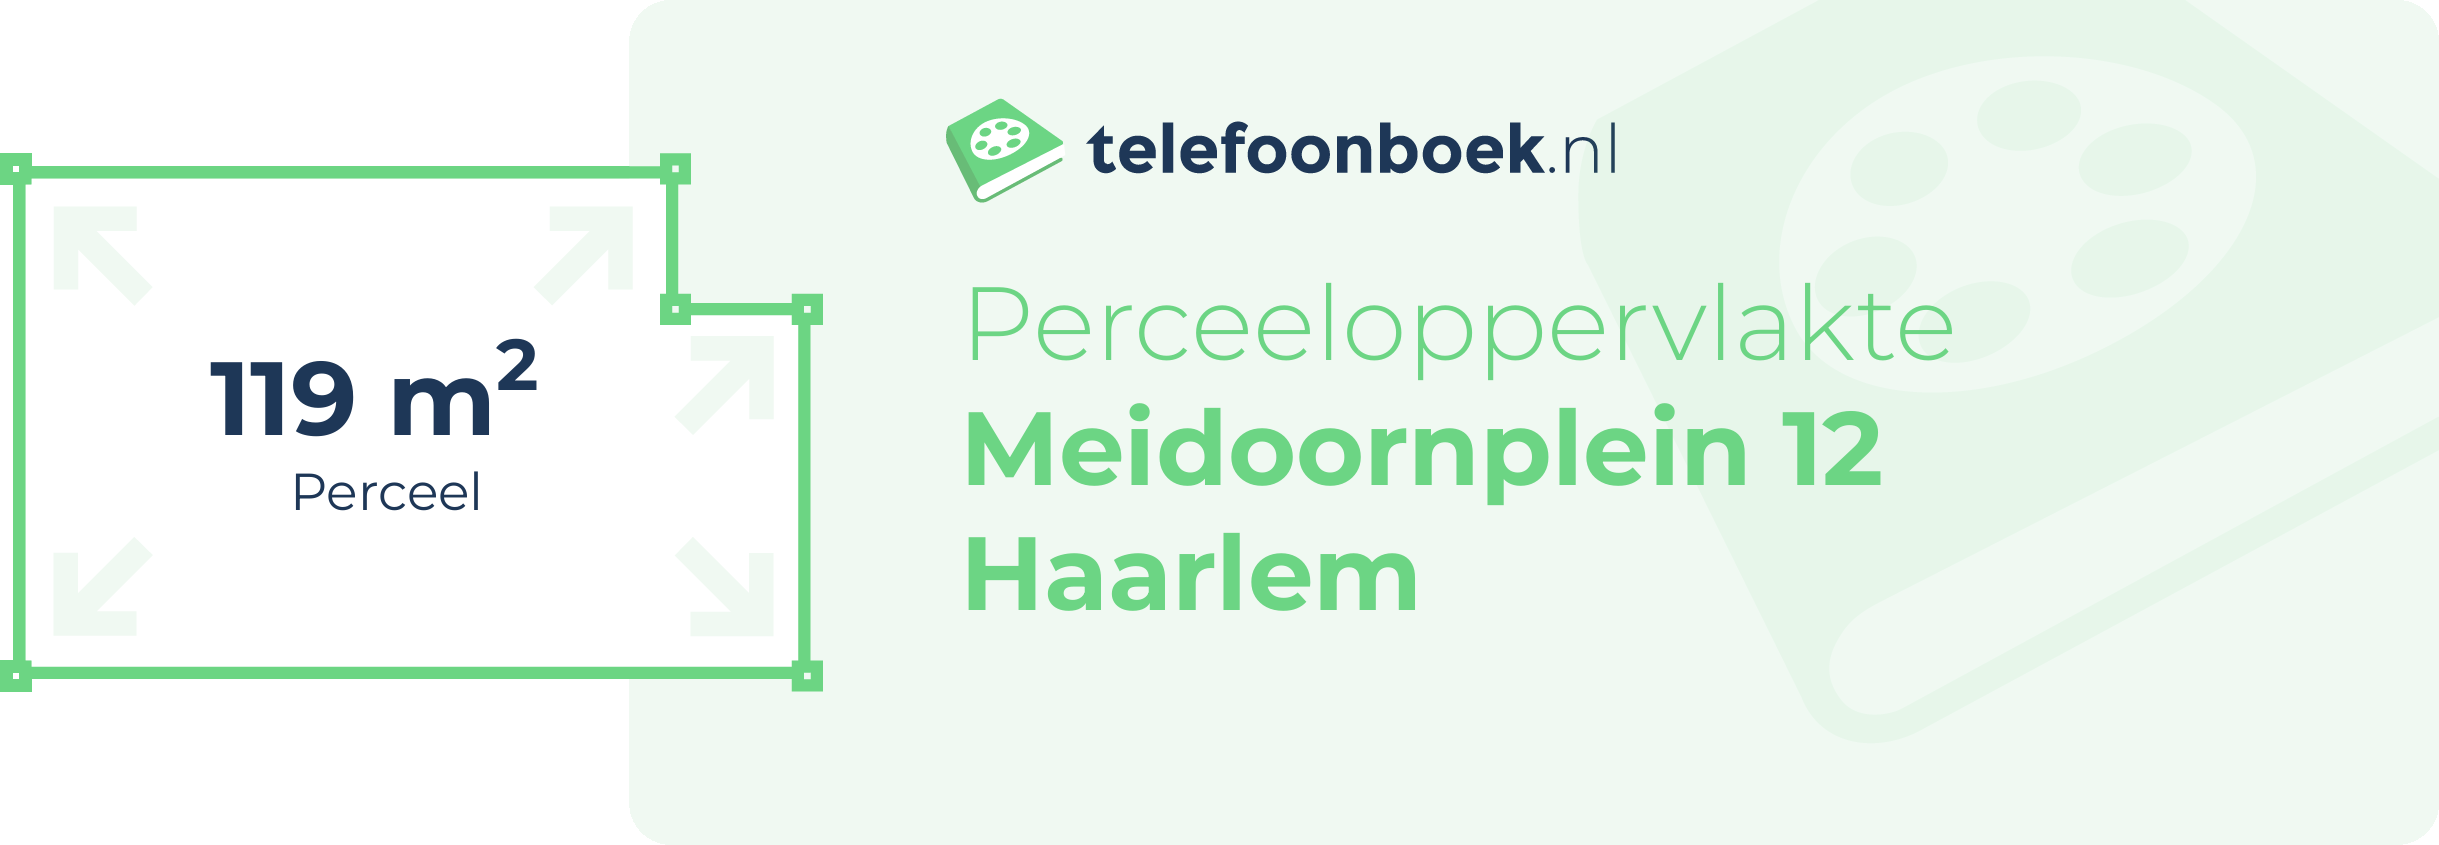 Perceeloppervlakte Meidoornplein 12 Haarlem